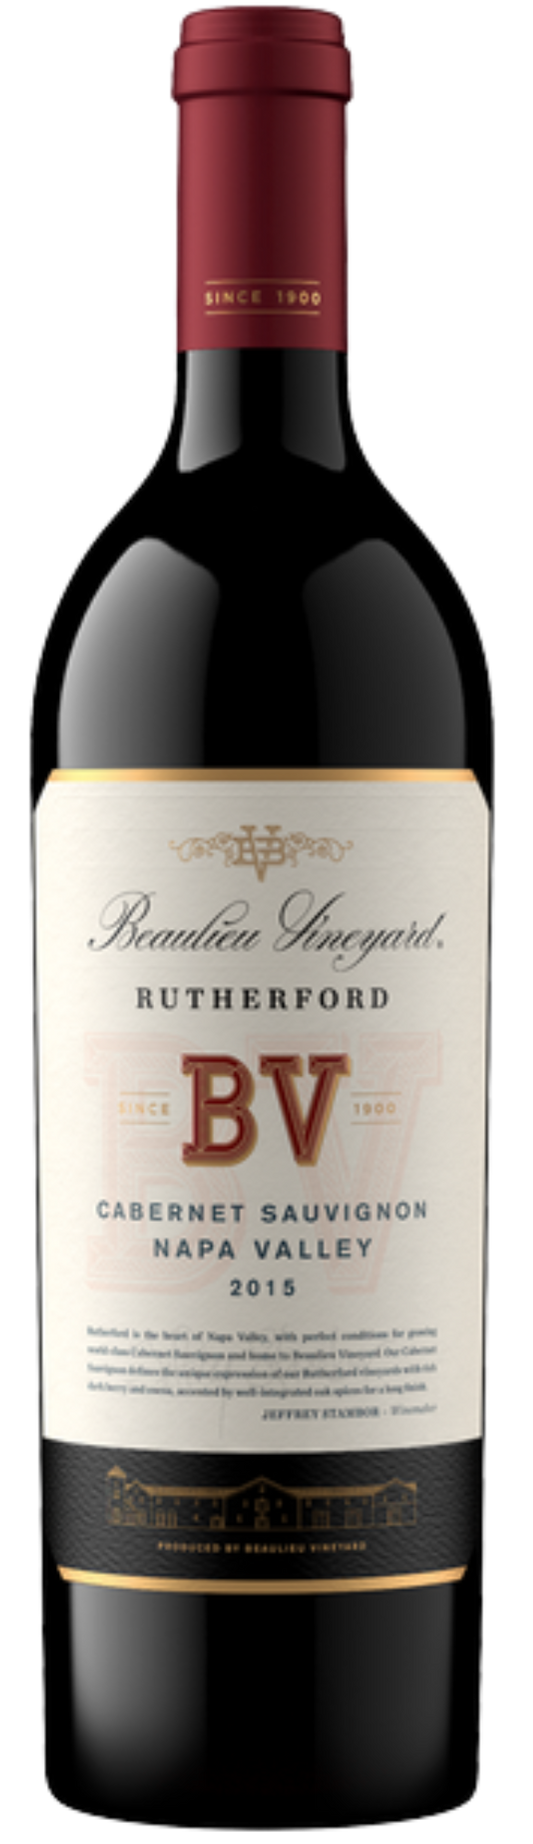 Beaulieu Vineyard Rutherford 2016